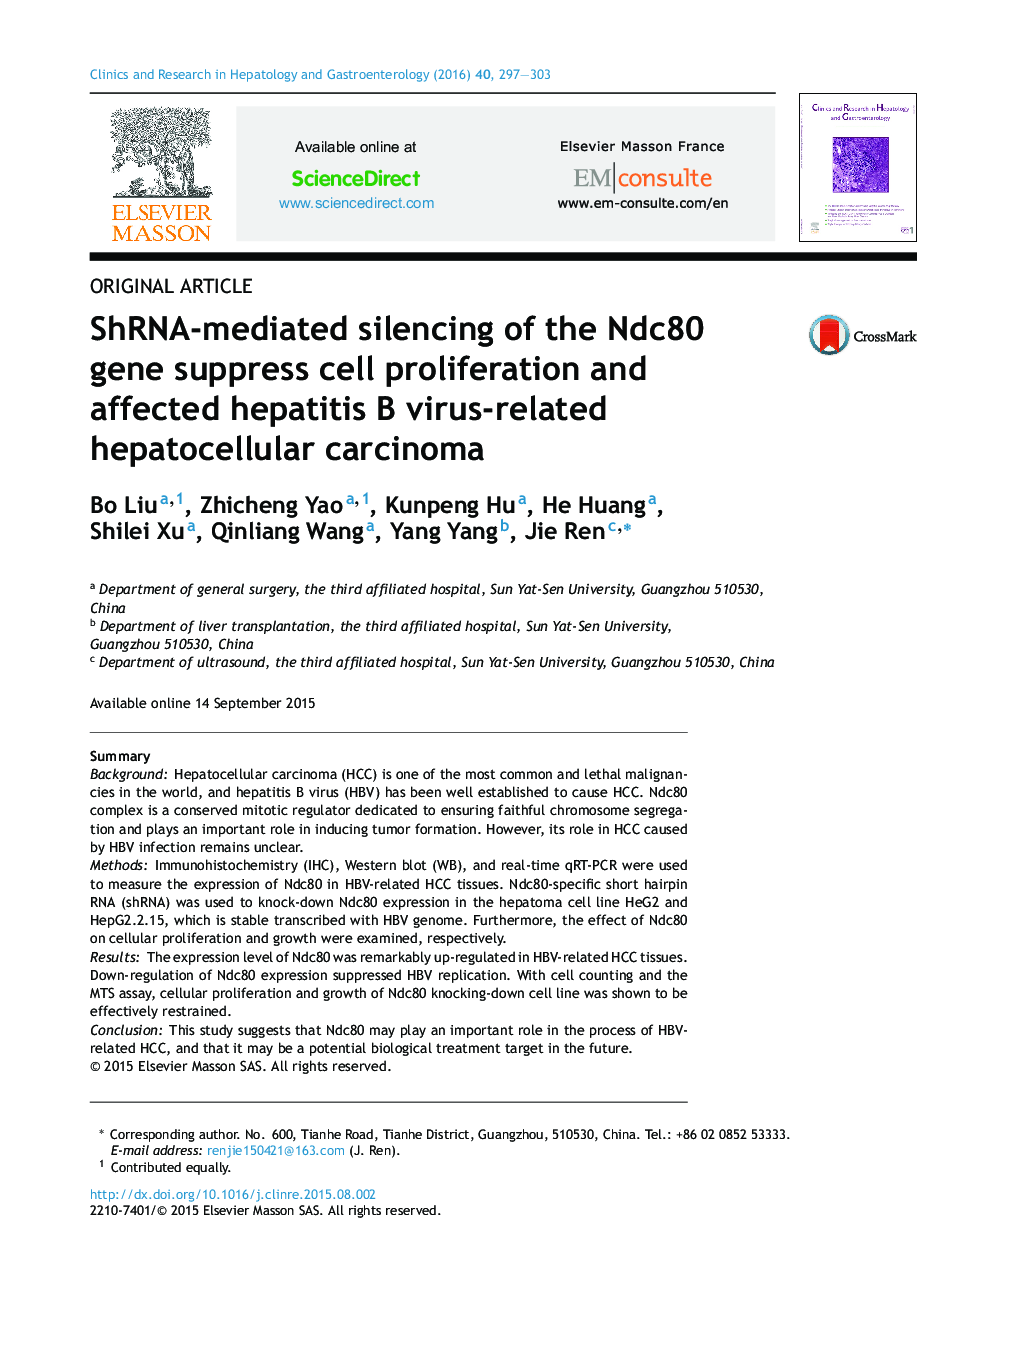 خاموش کردن ژن Ndc80 توسط SHRNA، مانع تکثیر سلول ها و کارسینوم هپاتوسلولار مرتبط با ویروس هپاتیت B می شود